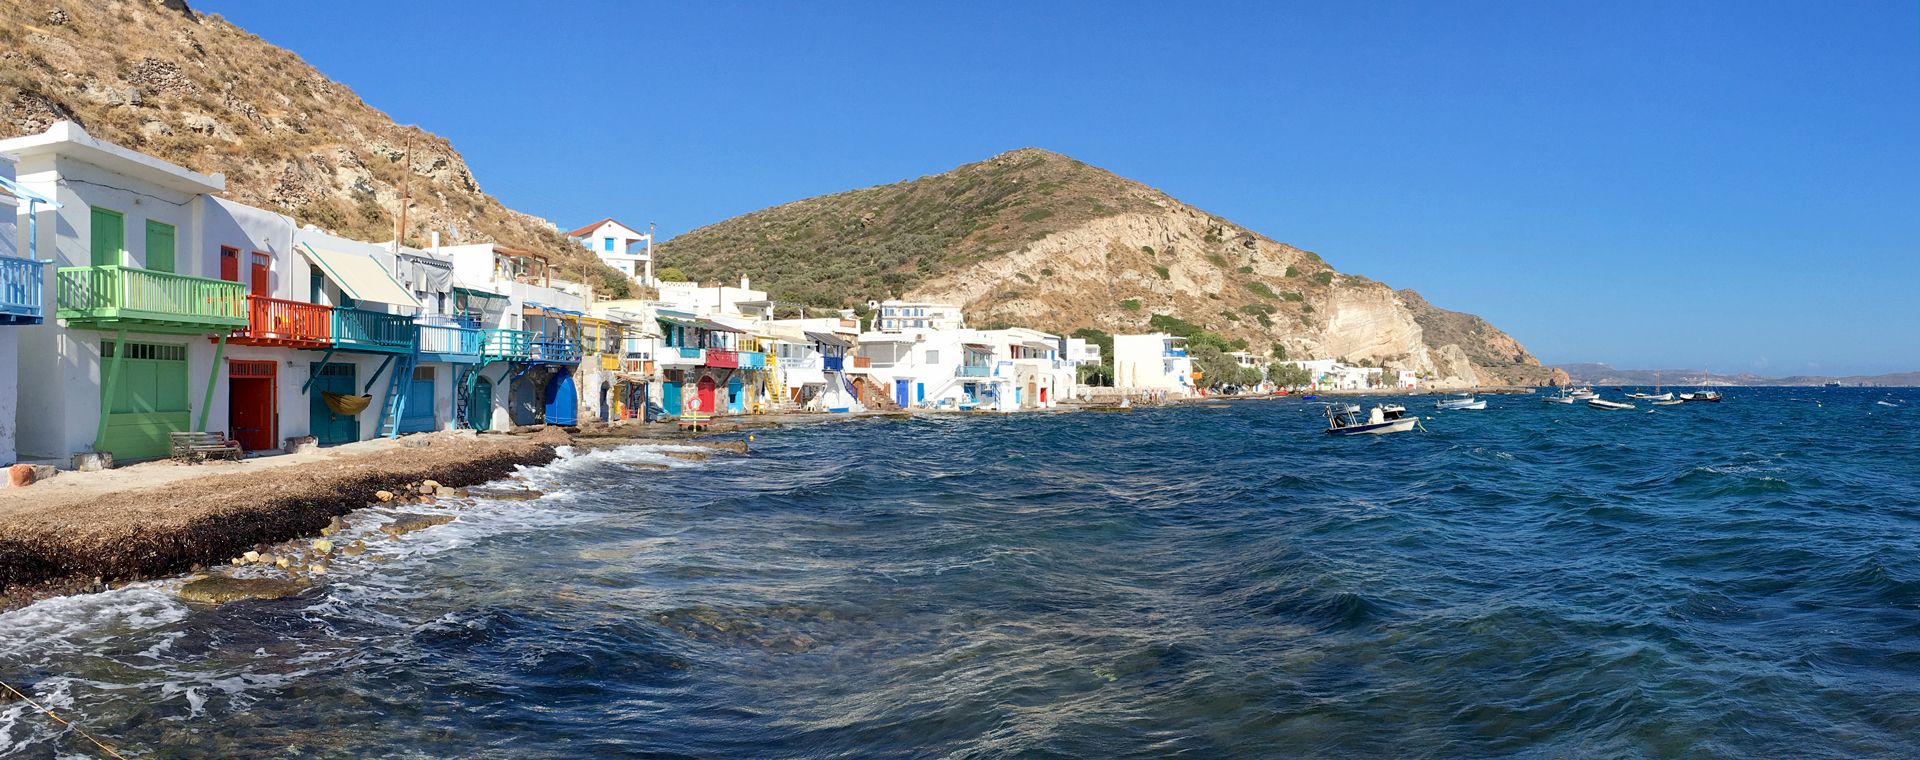 Le charmant village coloré de Klima, île de Milos, Cyclades